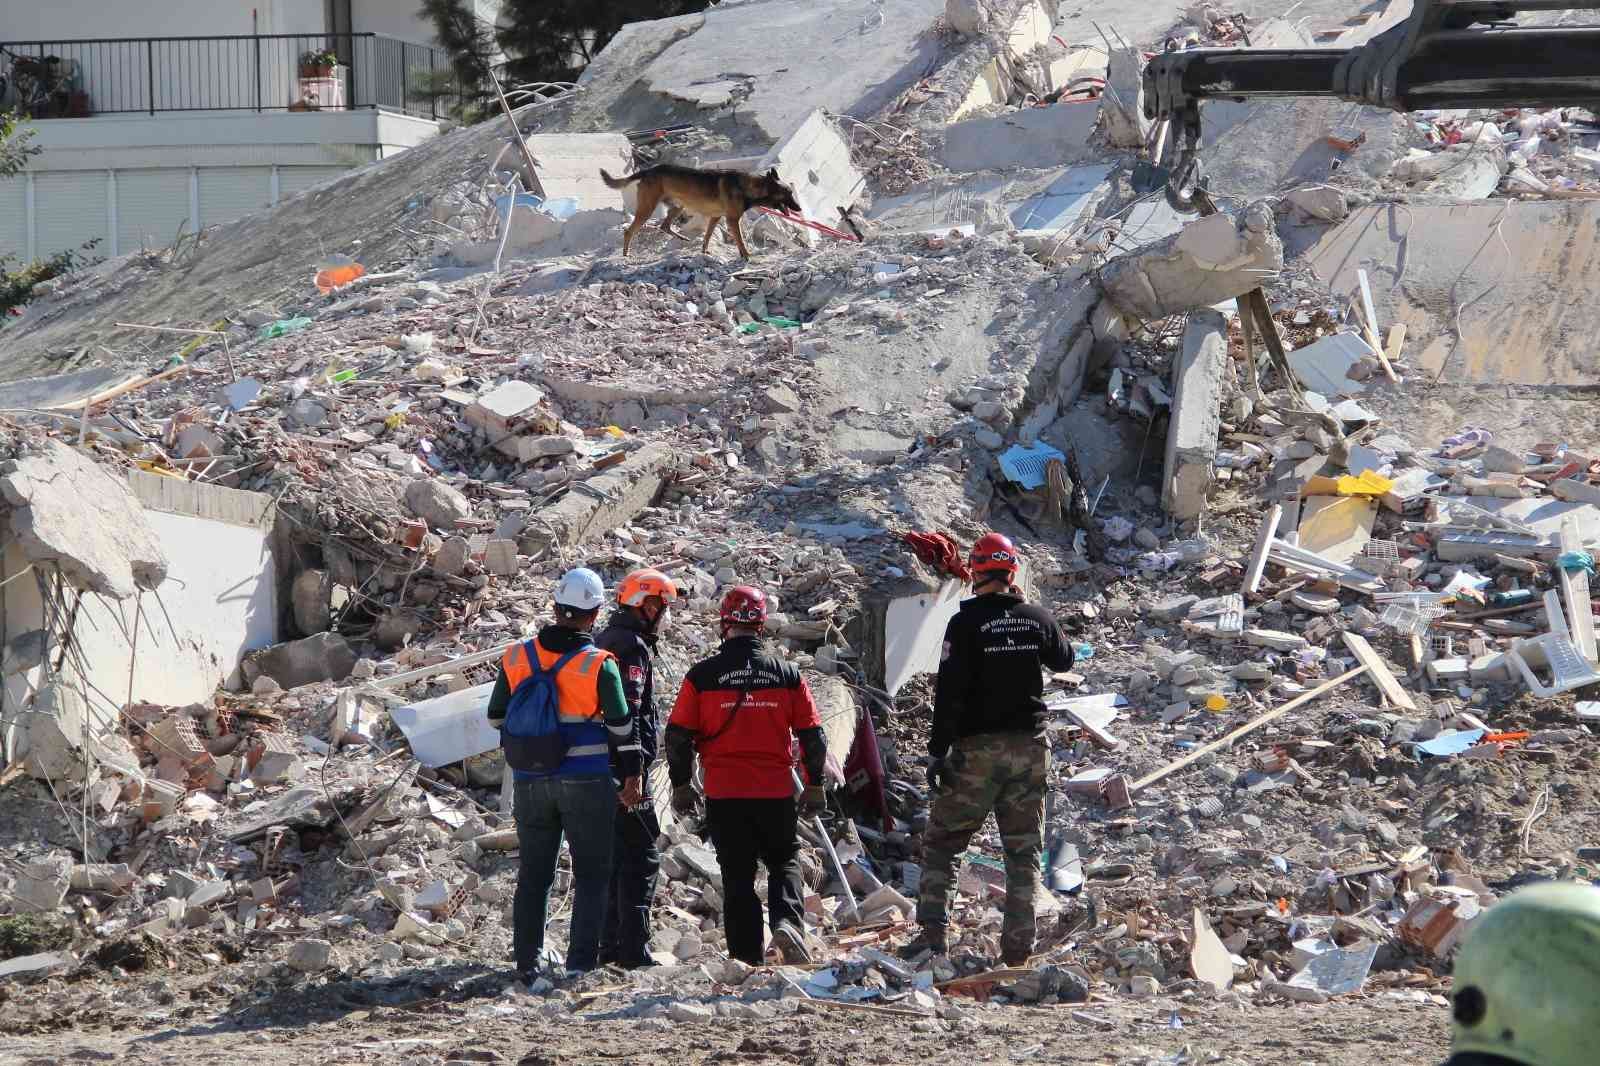 Depremde 11 kişinin öldüğü apartmanın müteahhidi: “Benim inşaatlarım yıkılmaz” #izmir